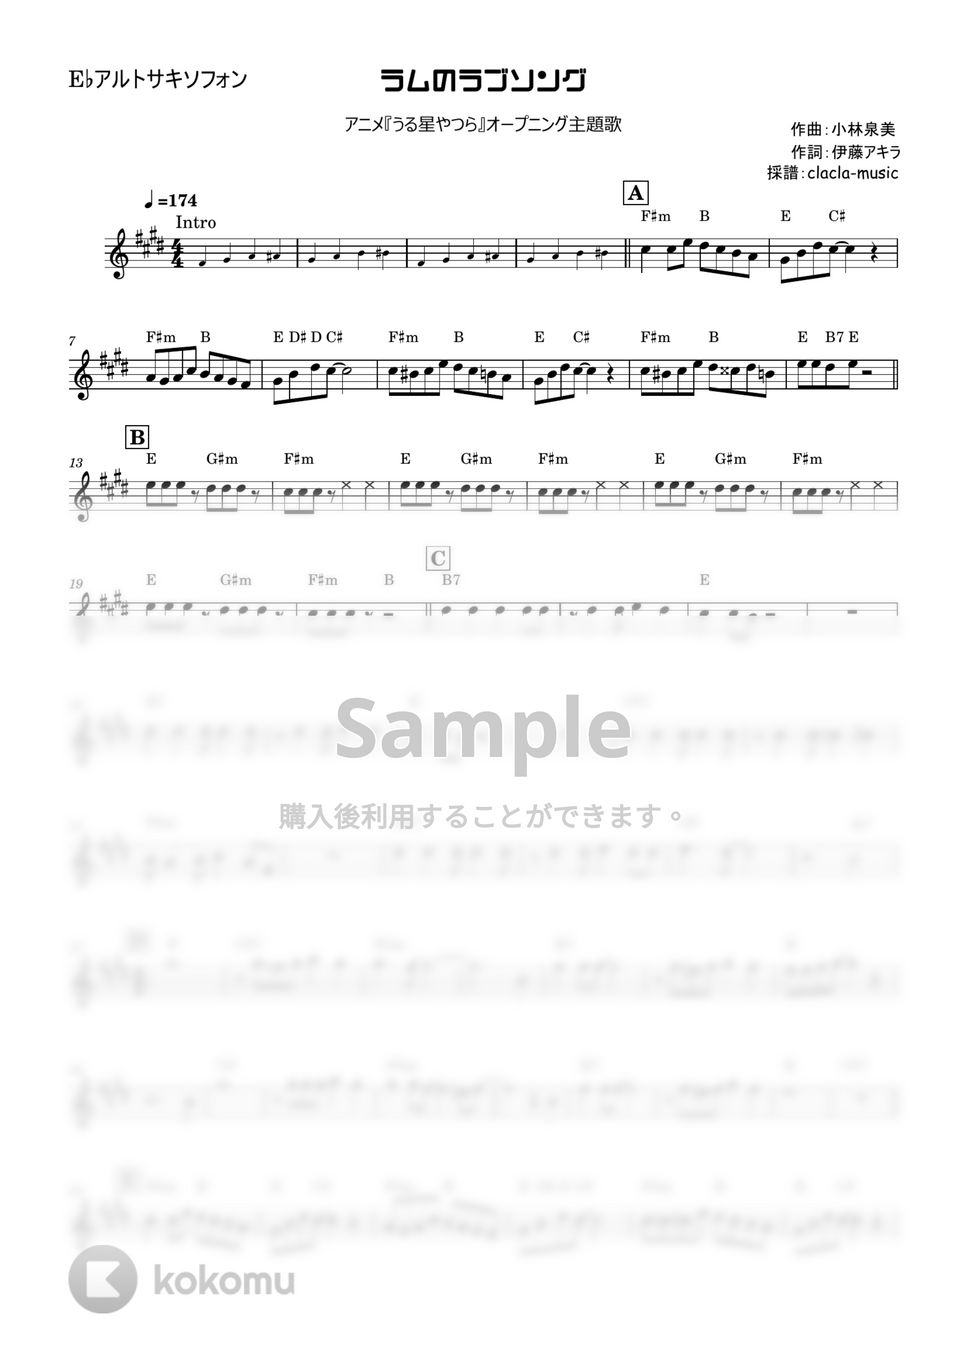 松谷祐子 - ラムのラブソング (うる星やつら、アルトサキソフォン、コード付き) by clacla-music